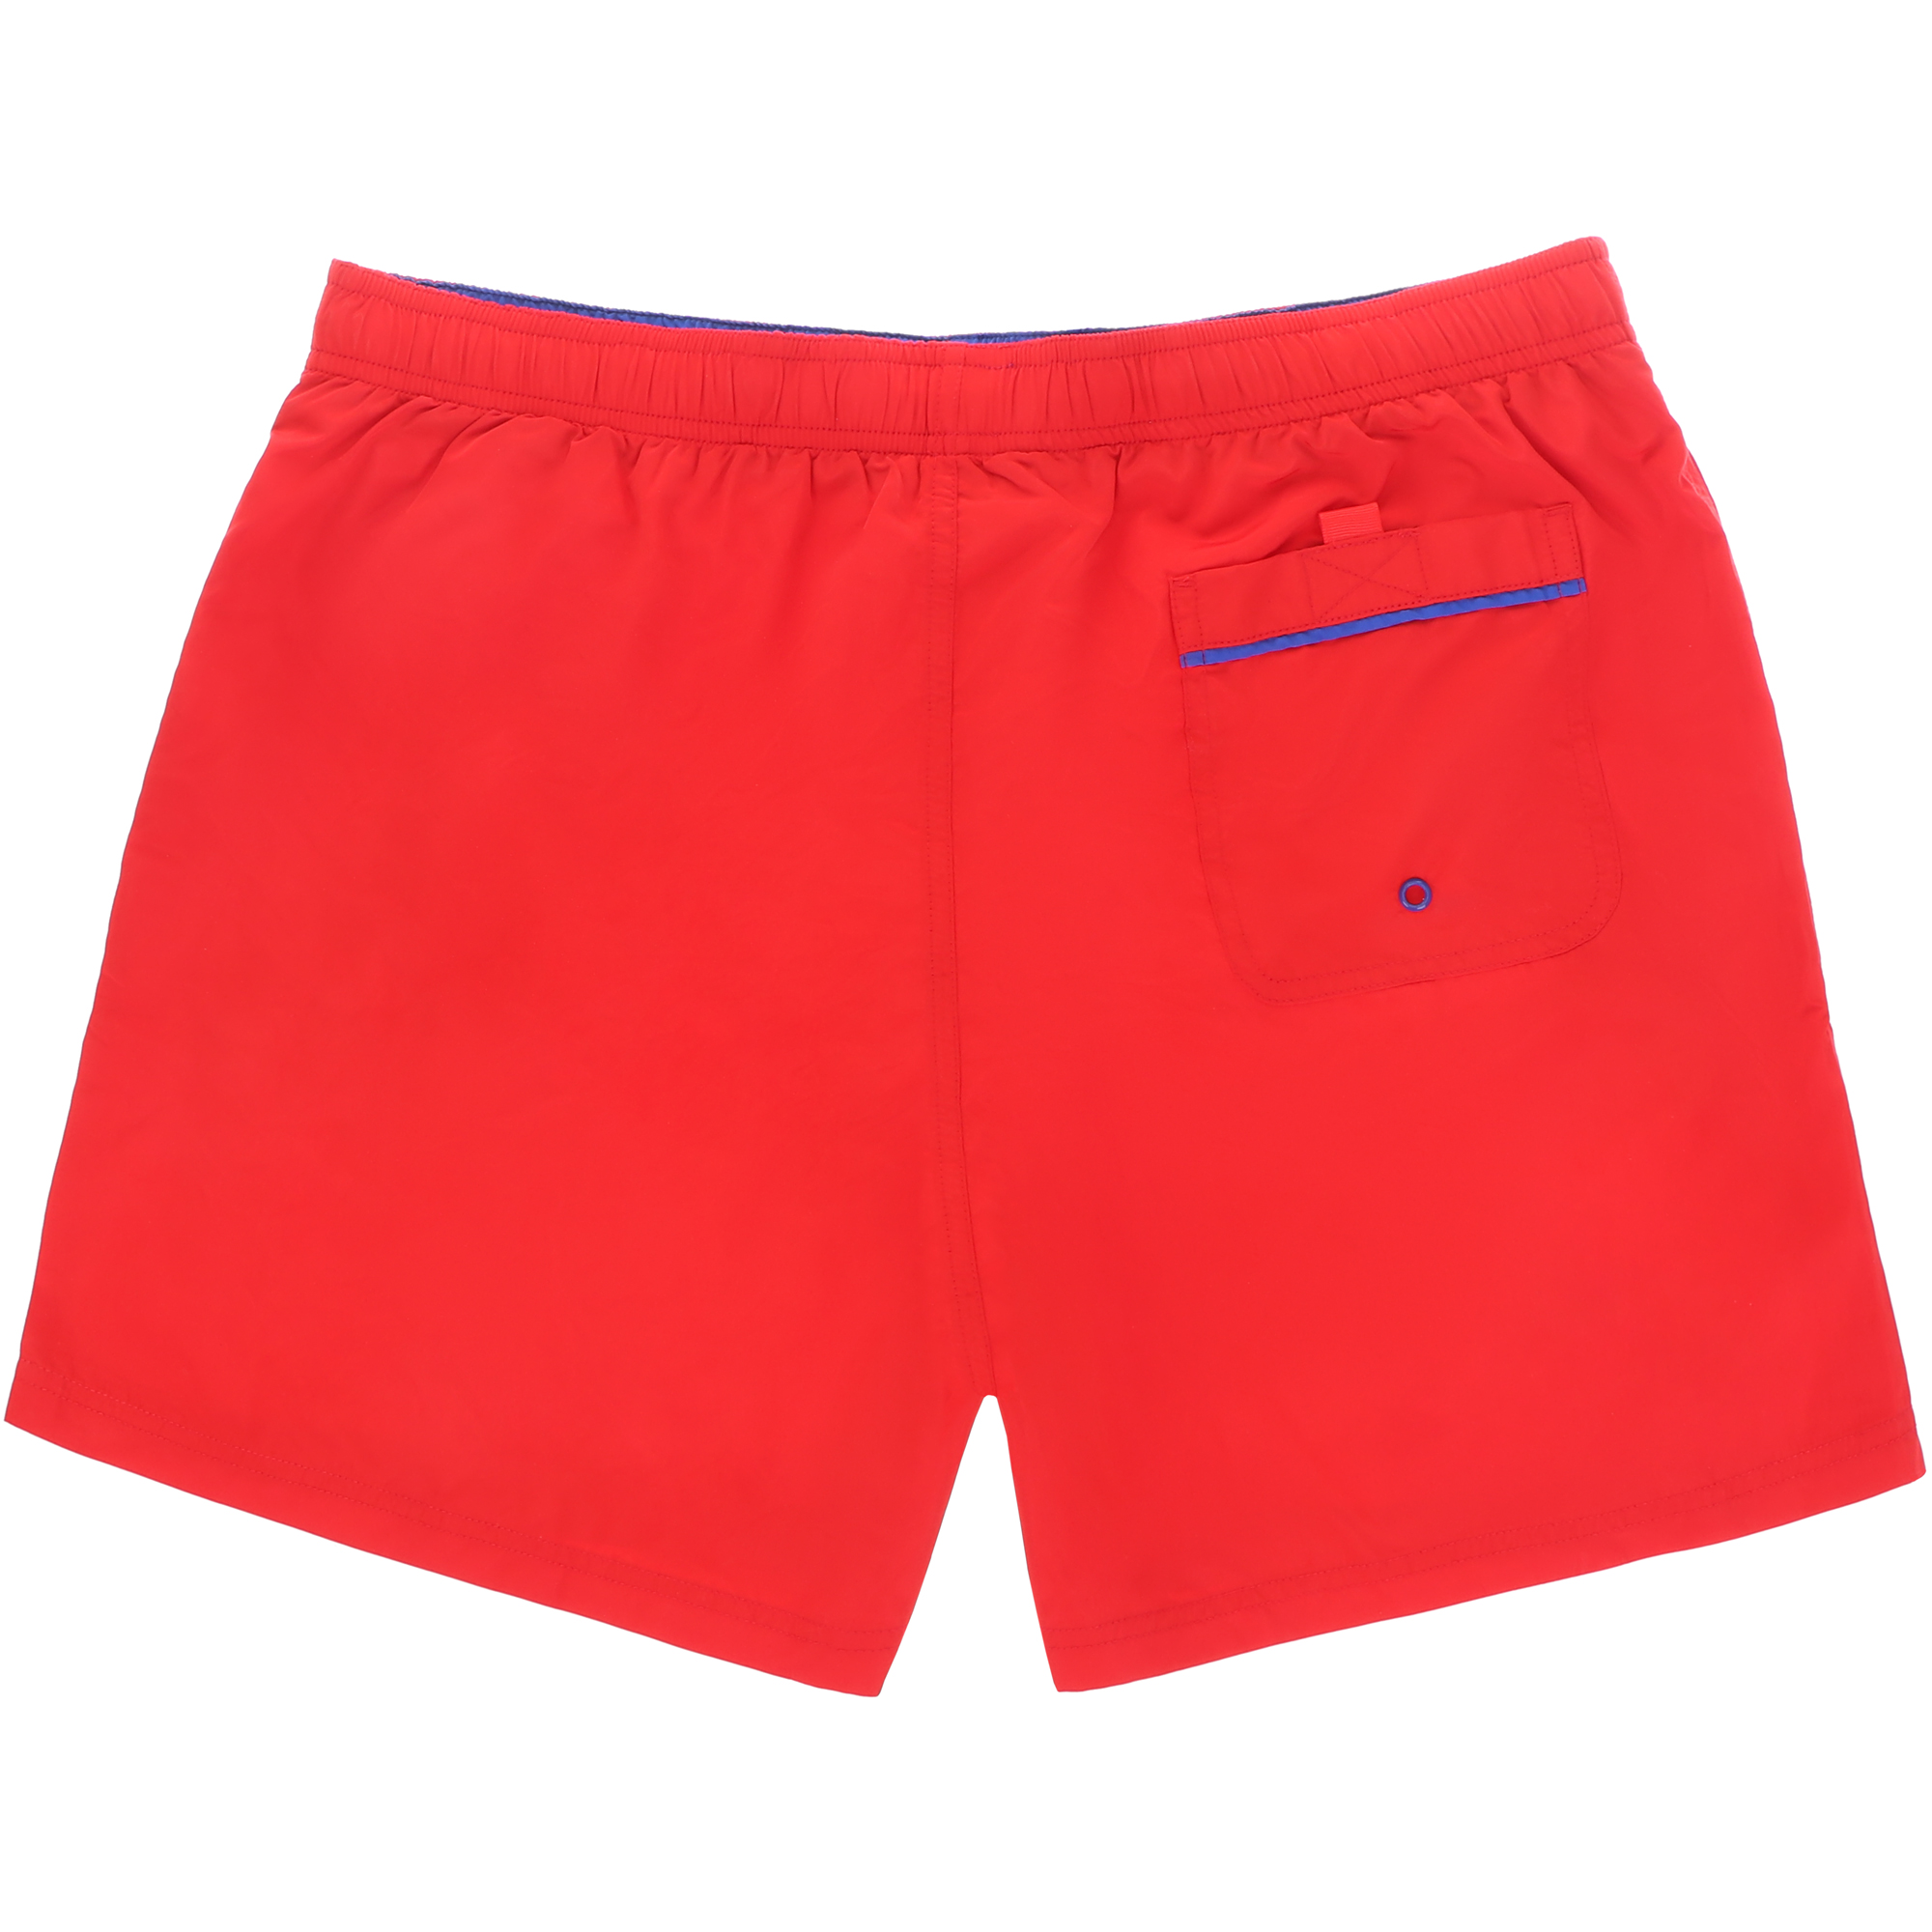 Мужские пляжные шорты Joyord красные, цвет красный, размер S - фото 2